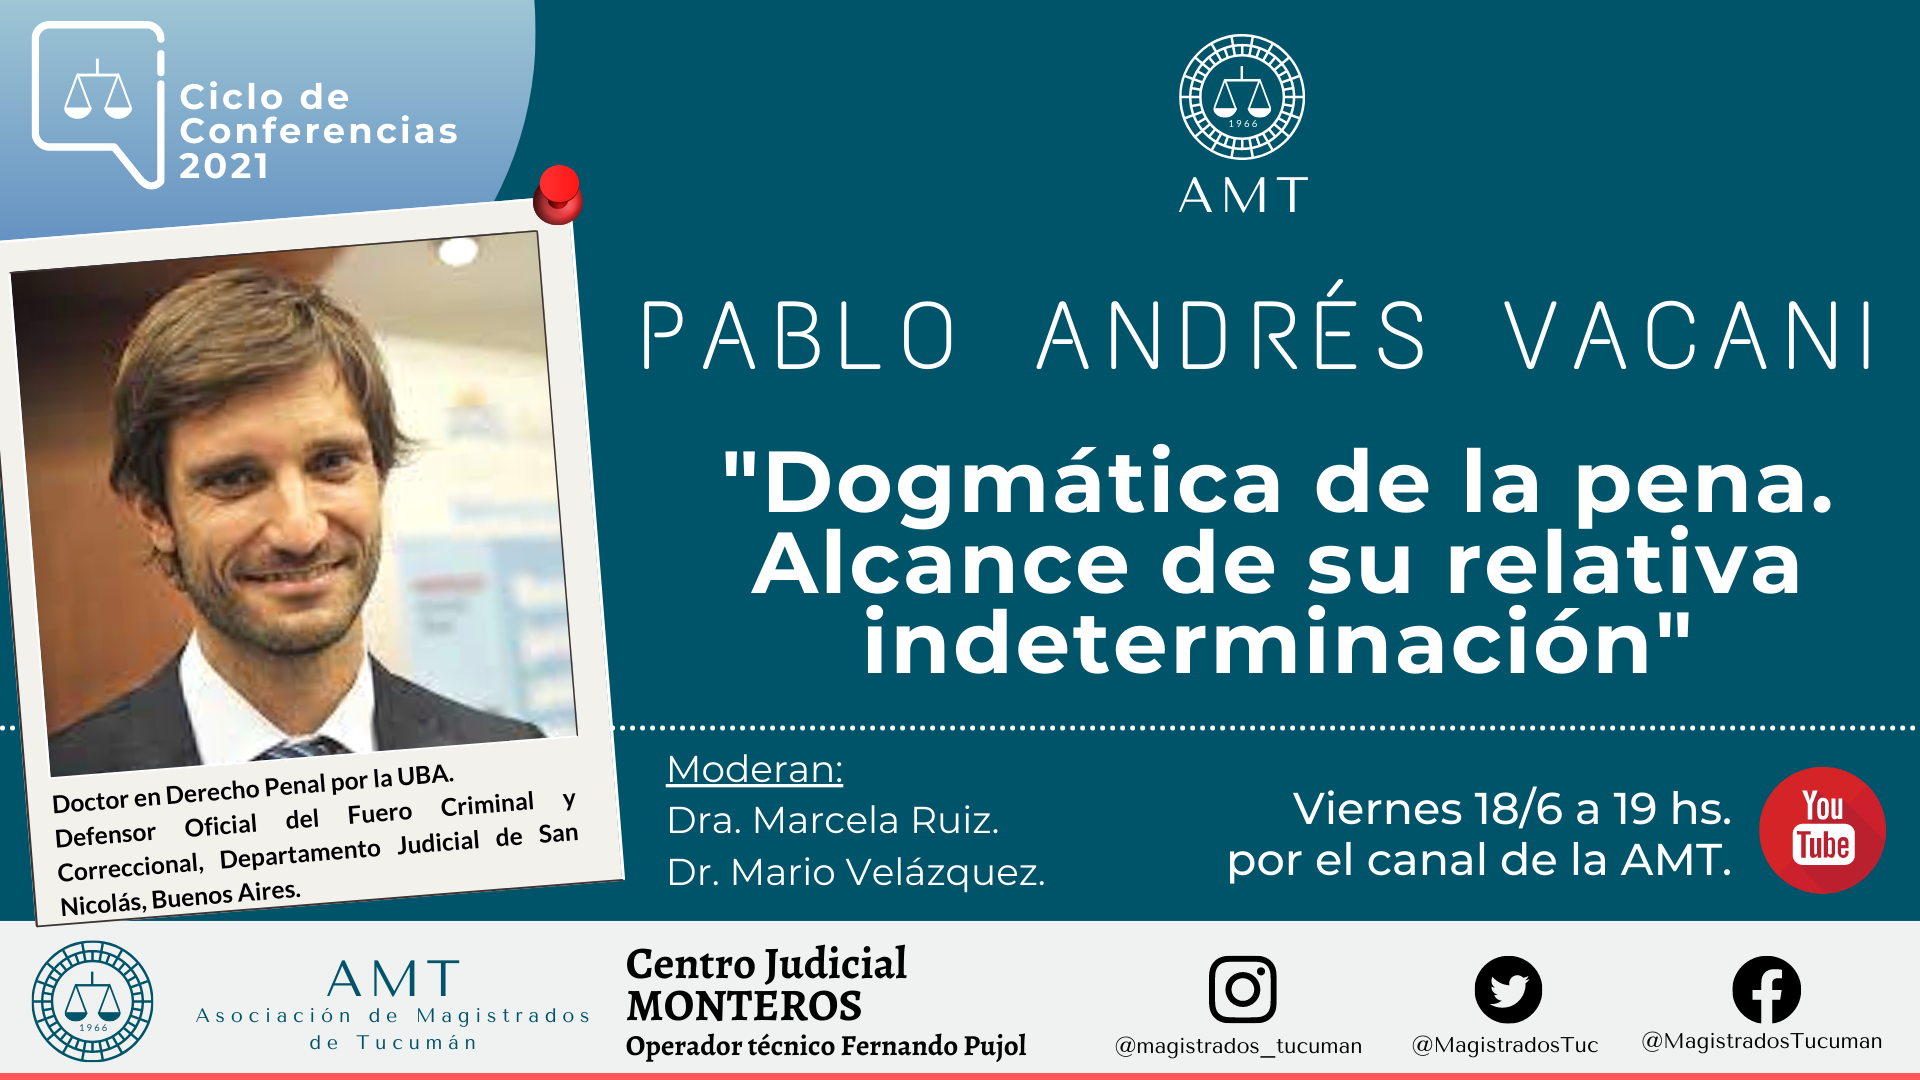 Vuelva a ver la conferencia de Pablo Andrés Vacani «Dogmática de la pena»